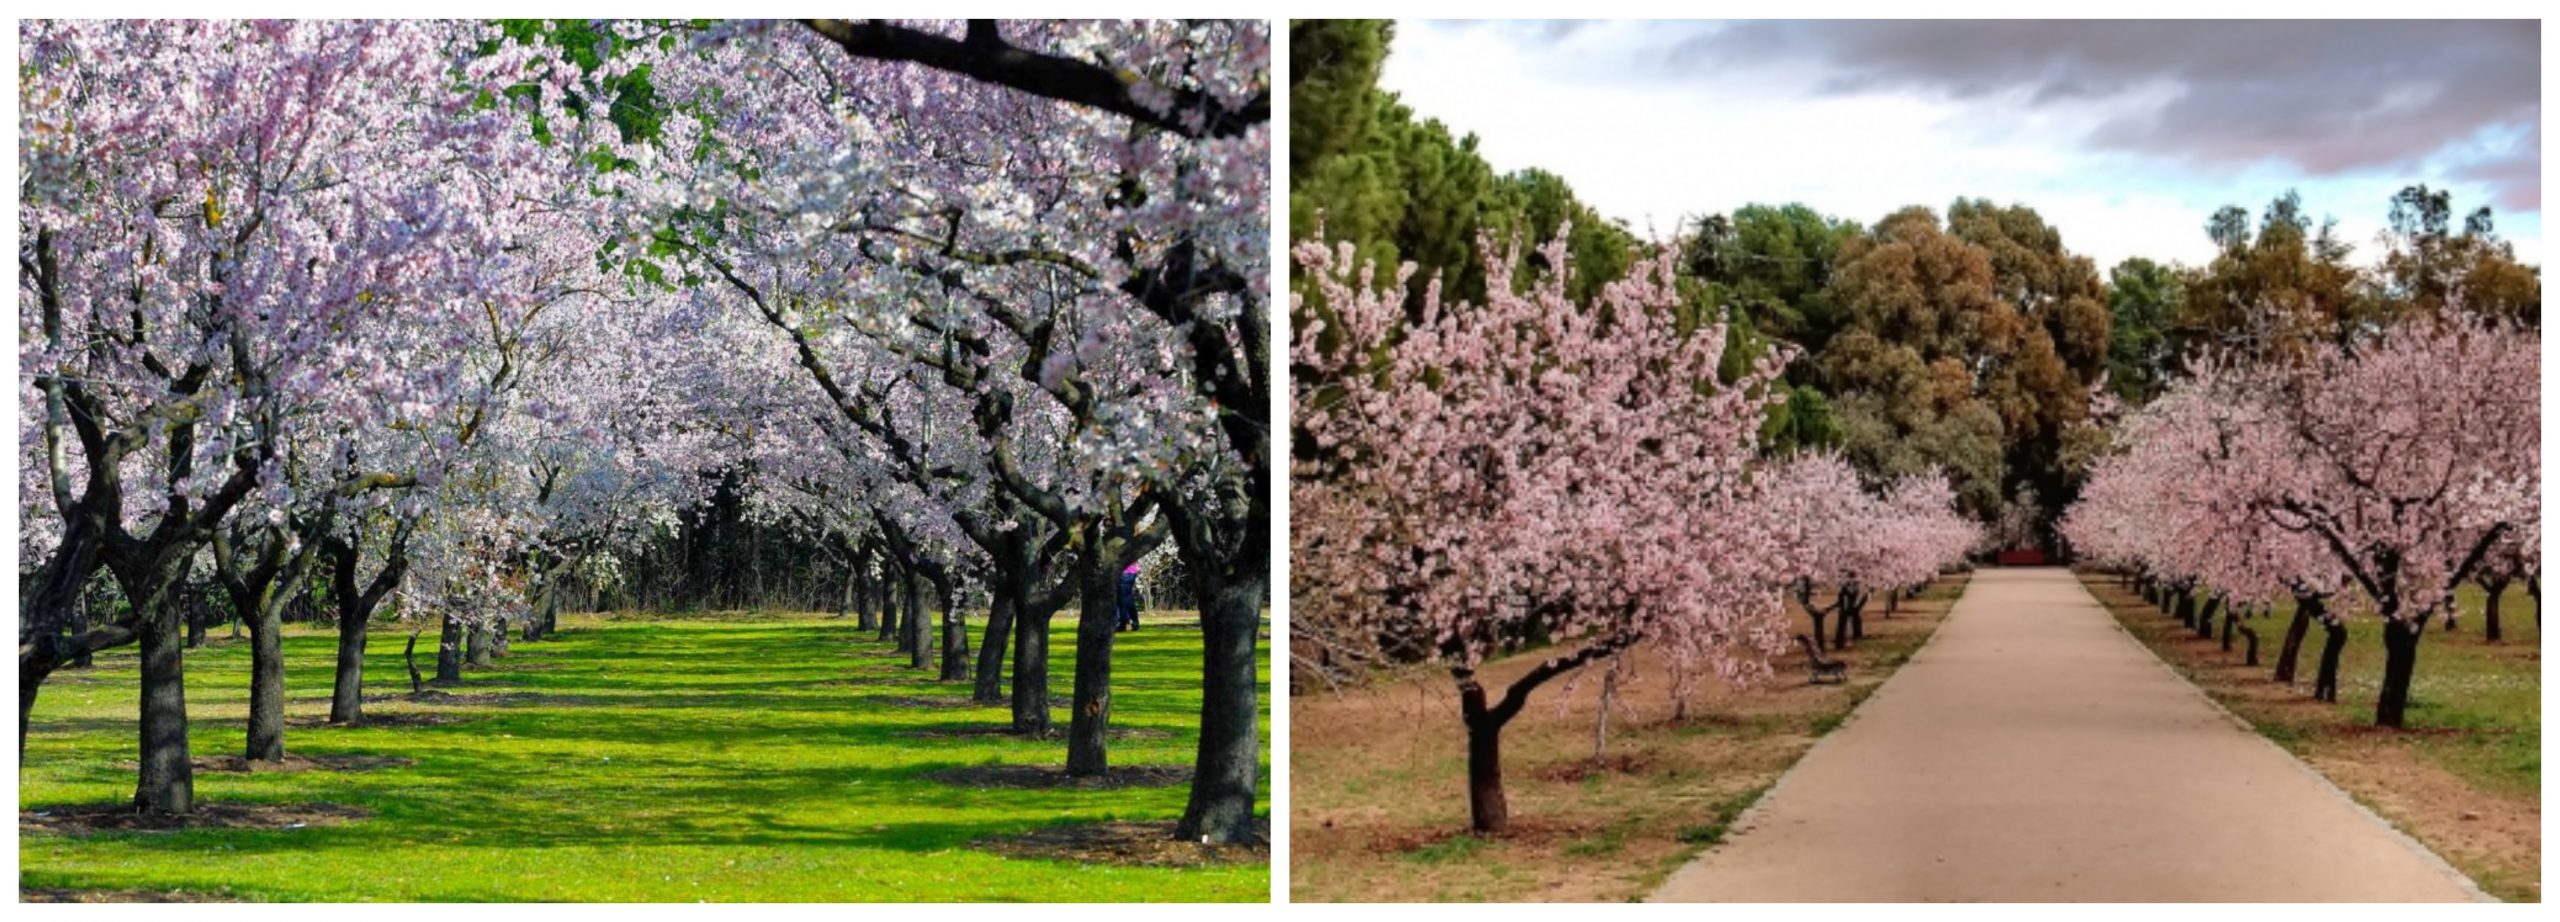 Almendros floreciendo en el Parque Quinta de los Molinos.